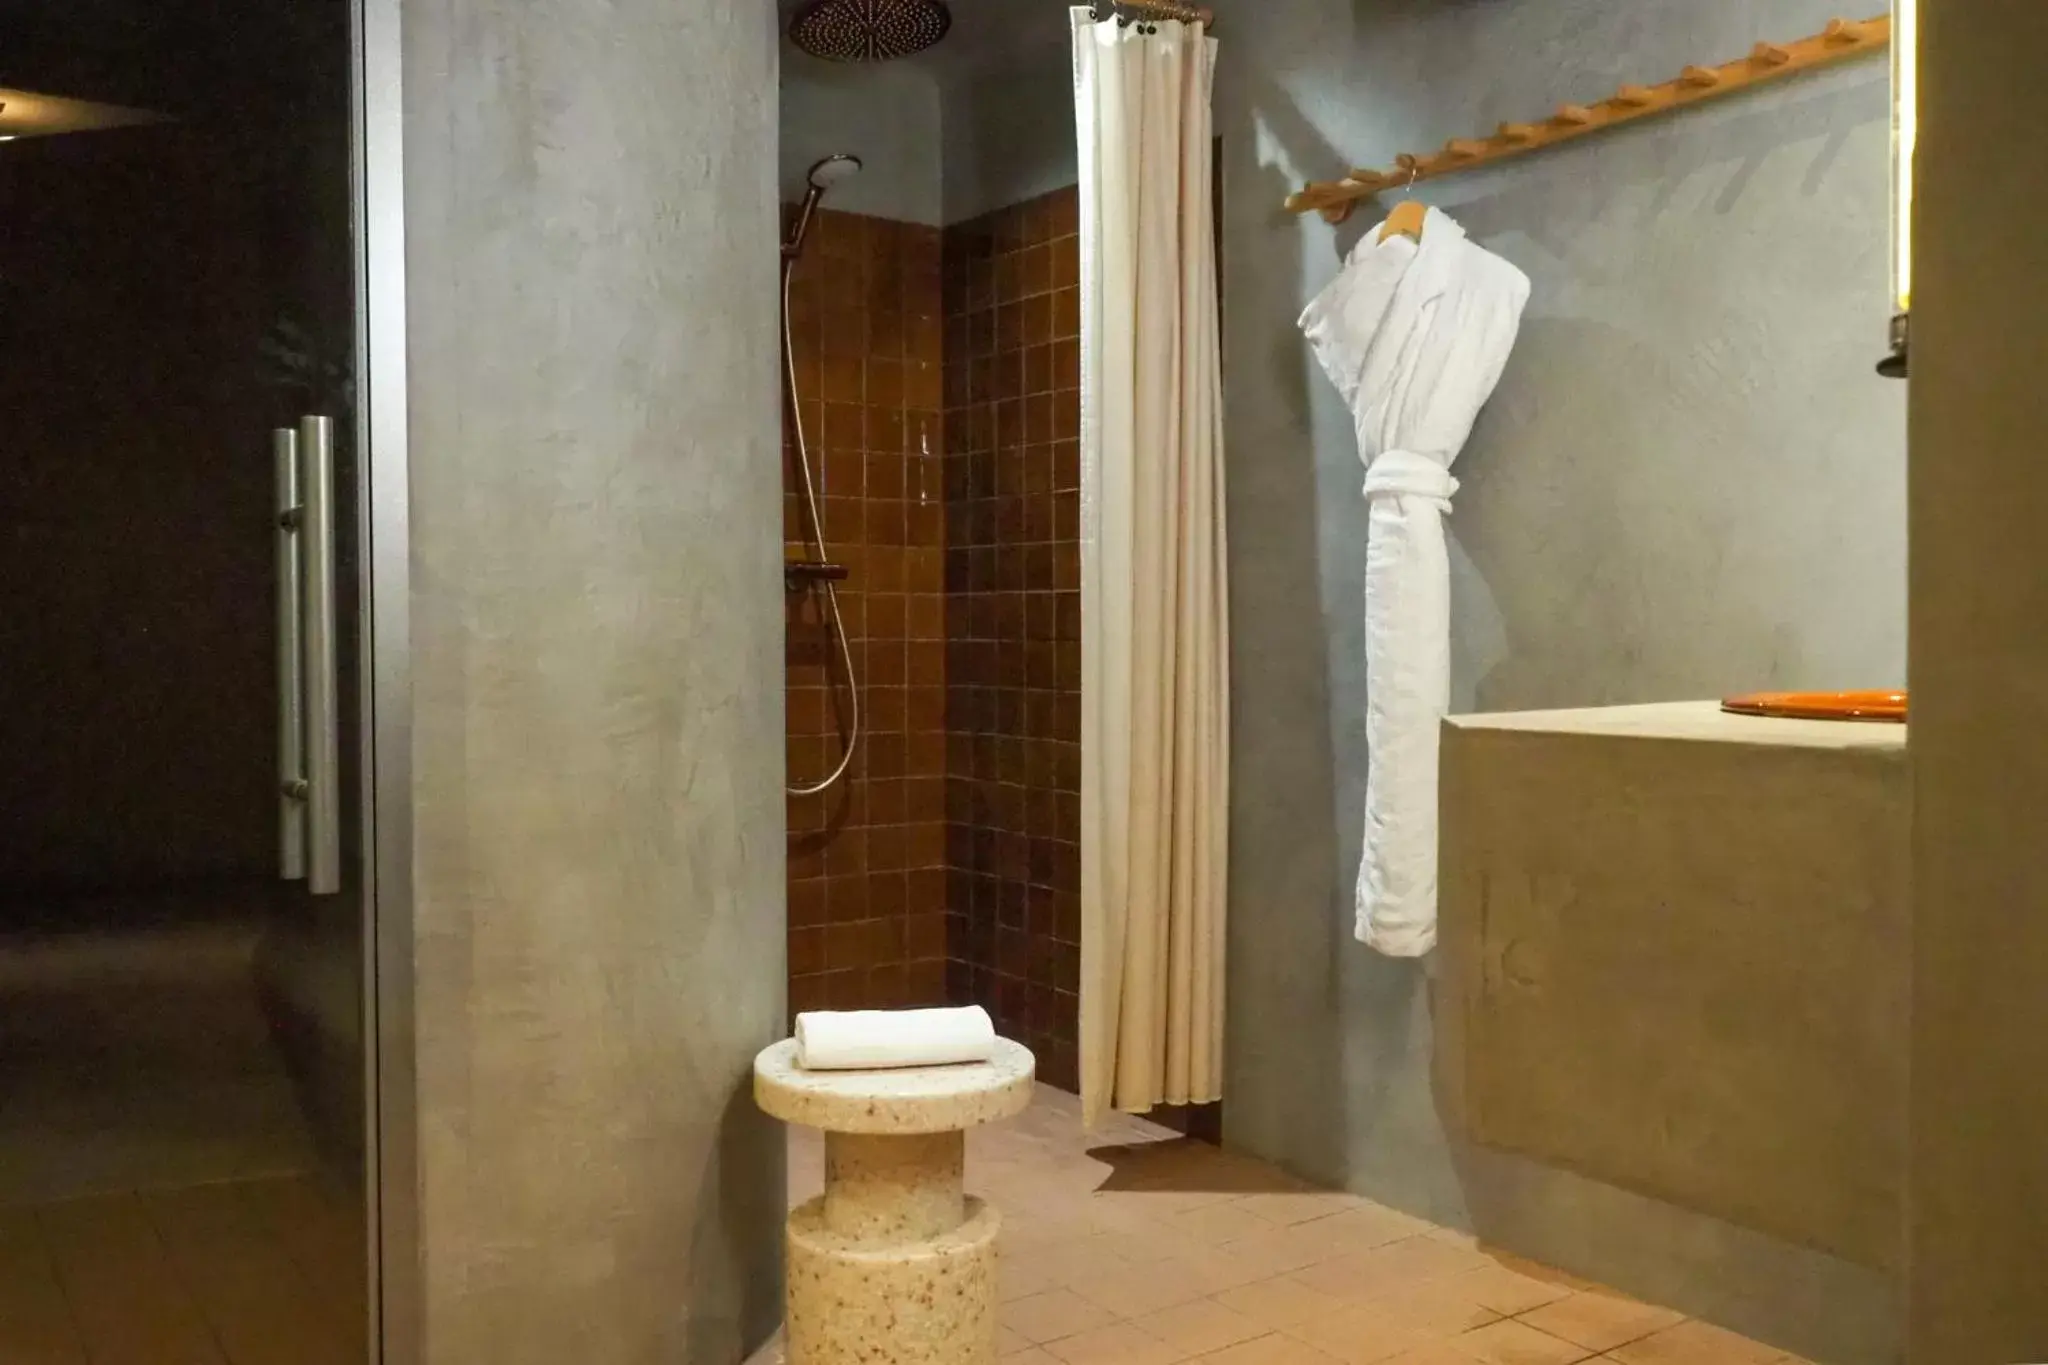 Steam room, Bathroom in Hotel Orphée - Orso Hotels